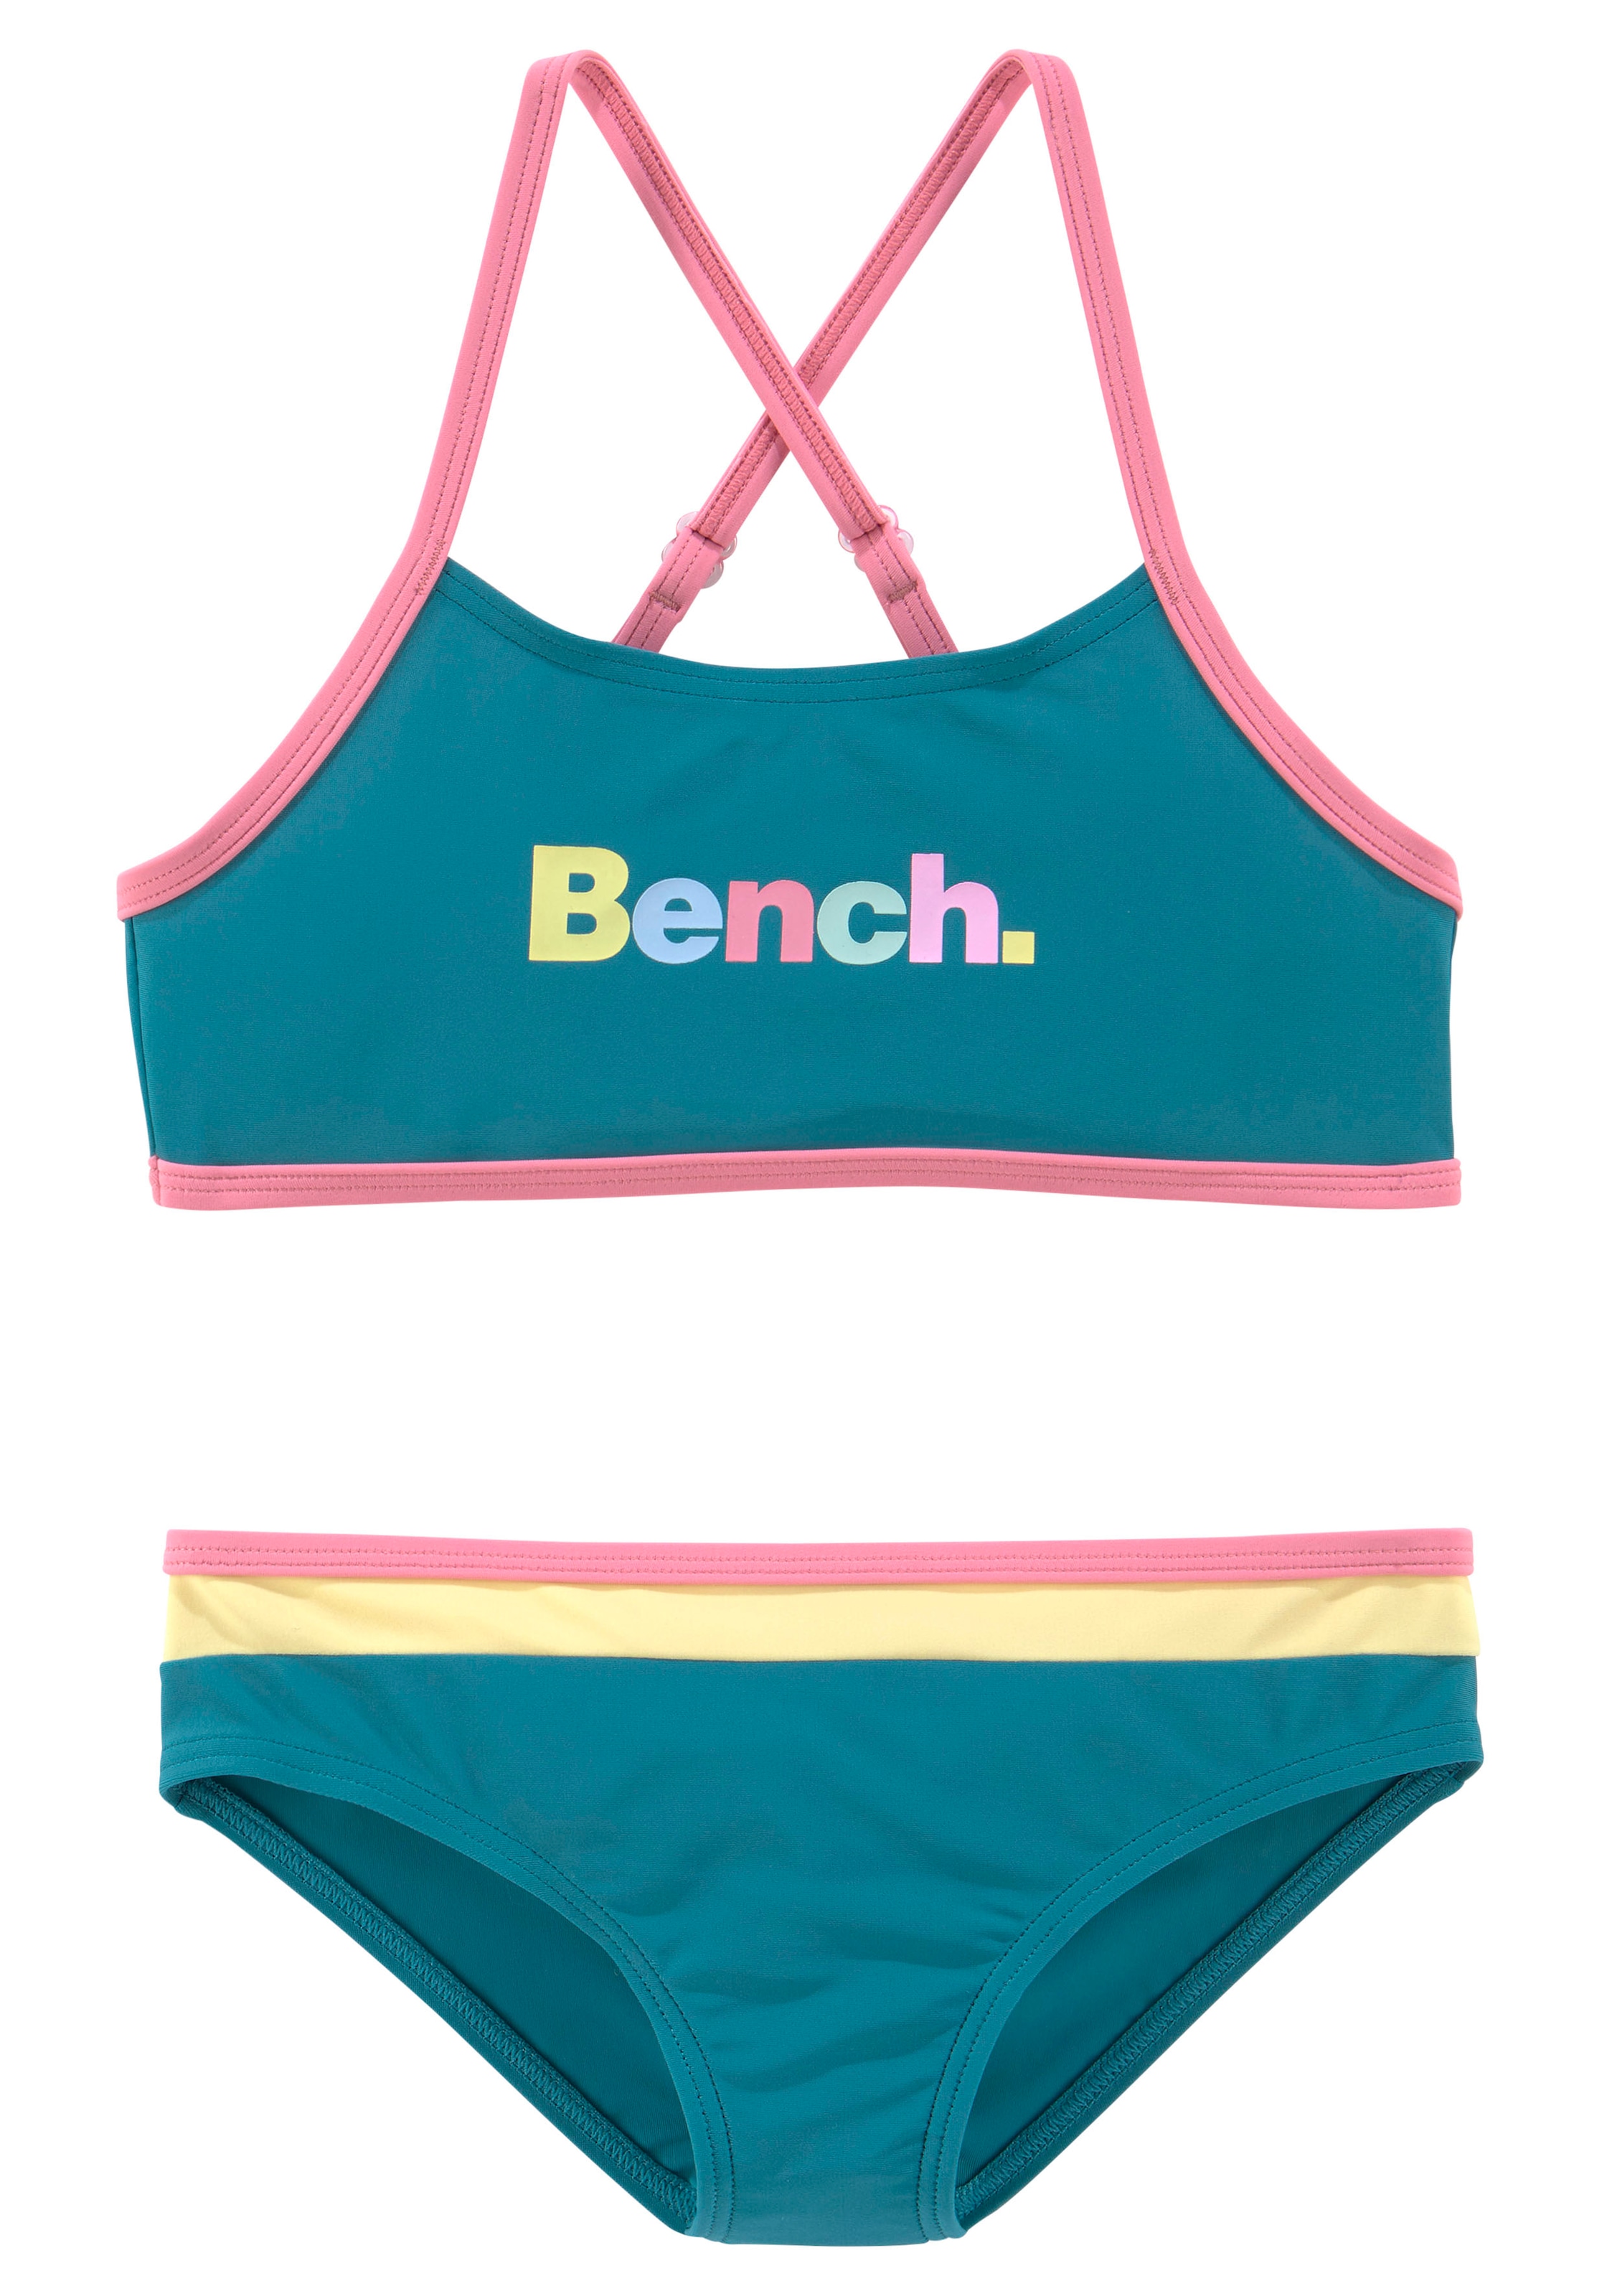 Bench. Bustier-Bikini, mit bunten bei Details OTTO